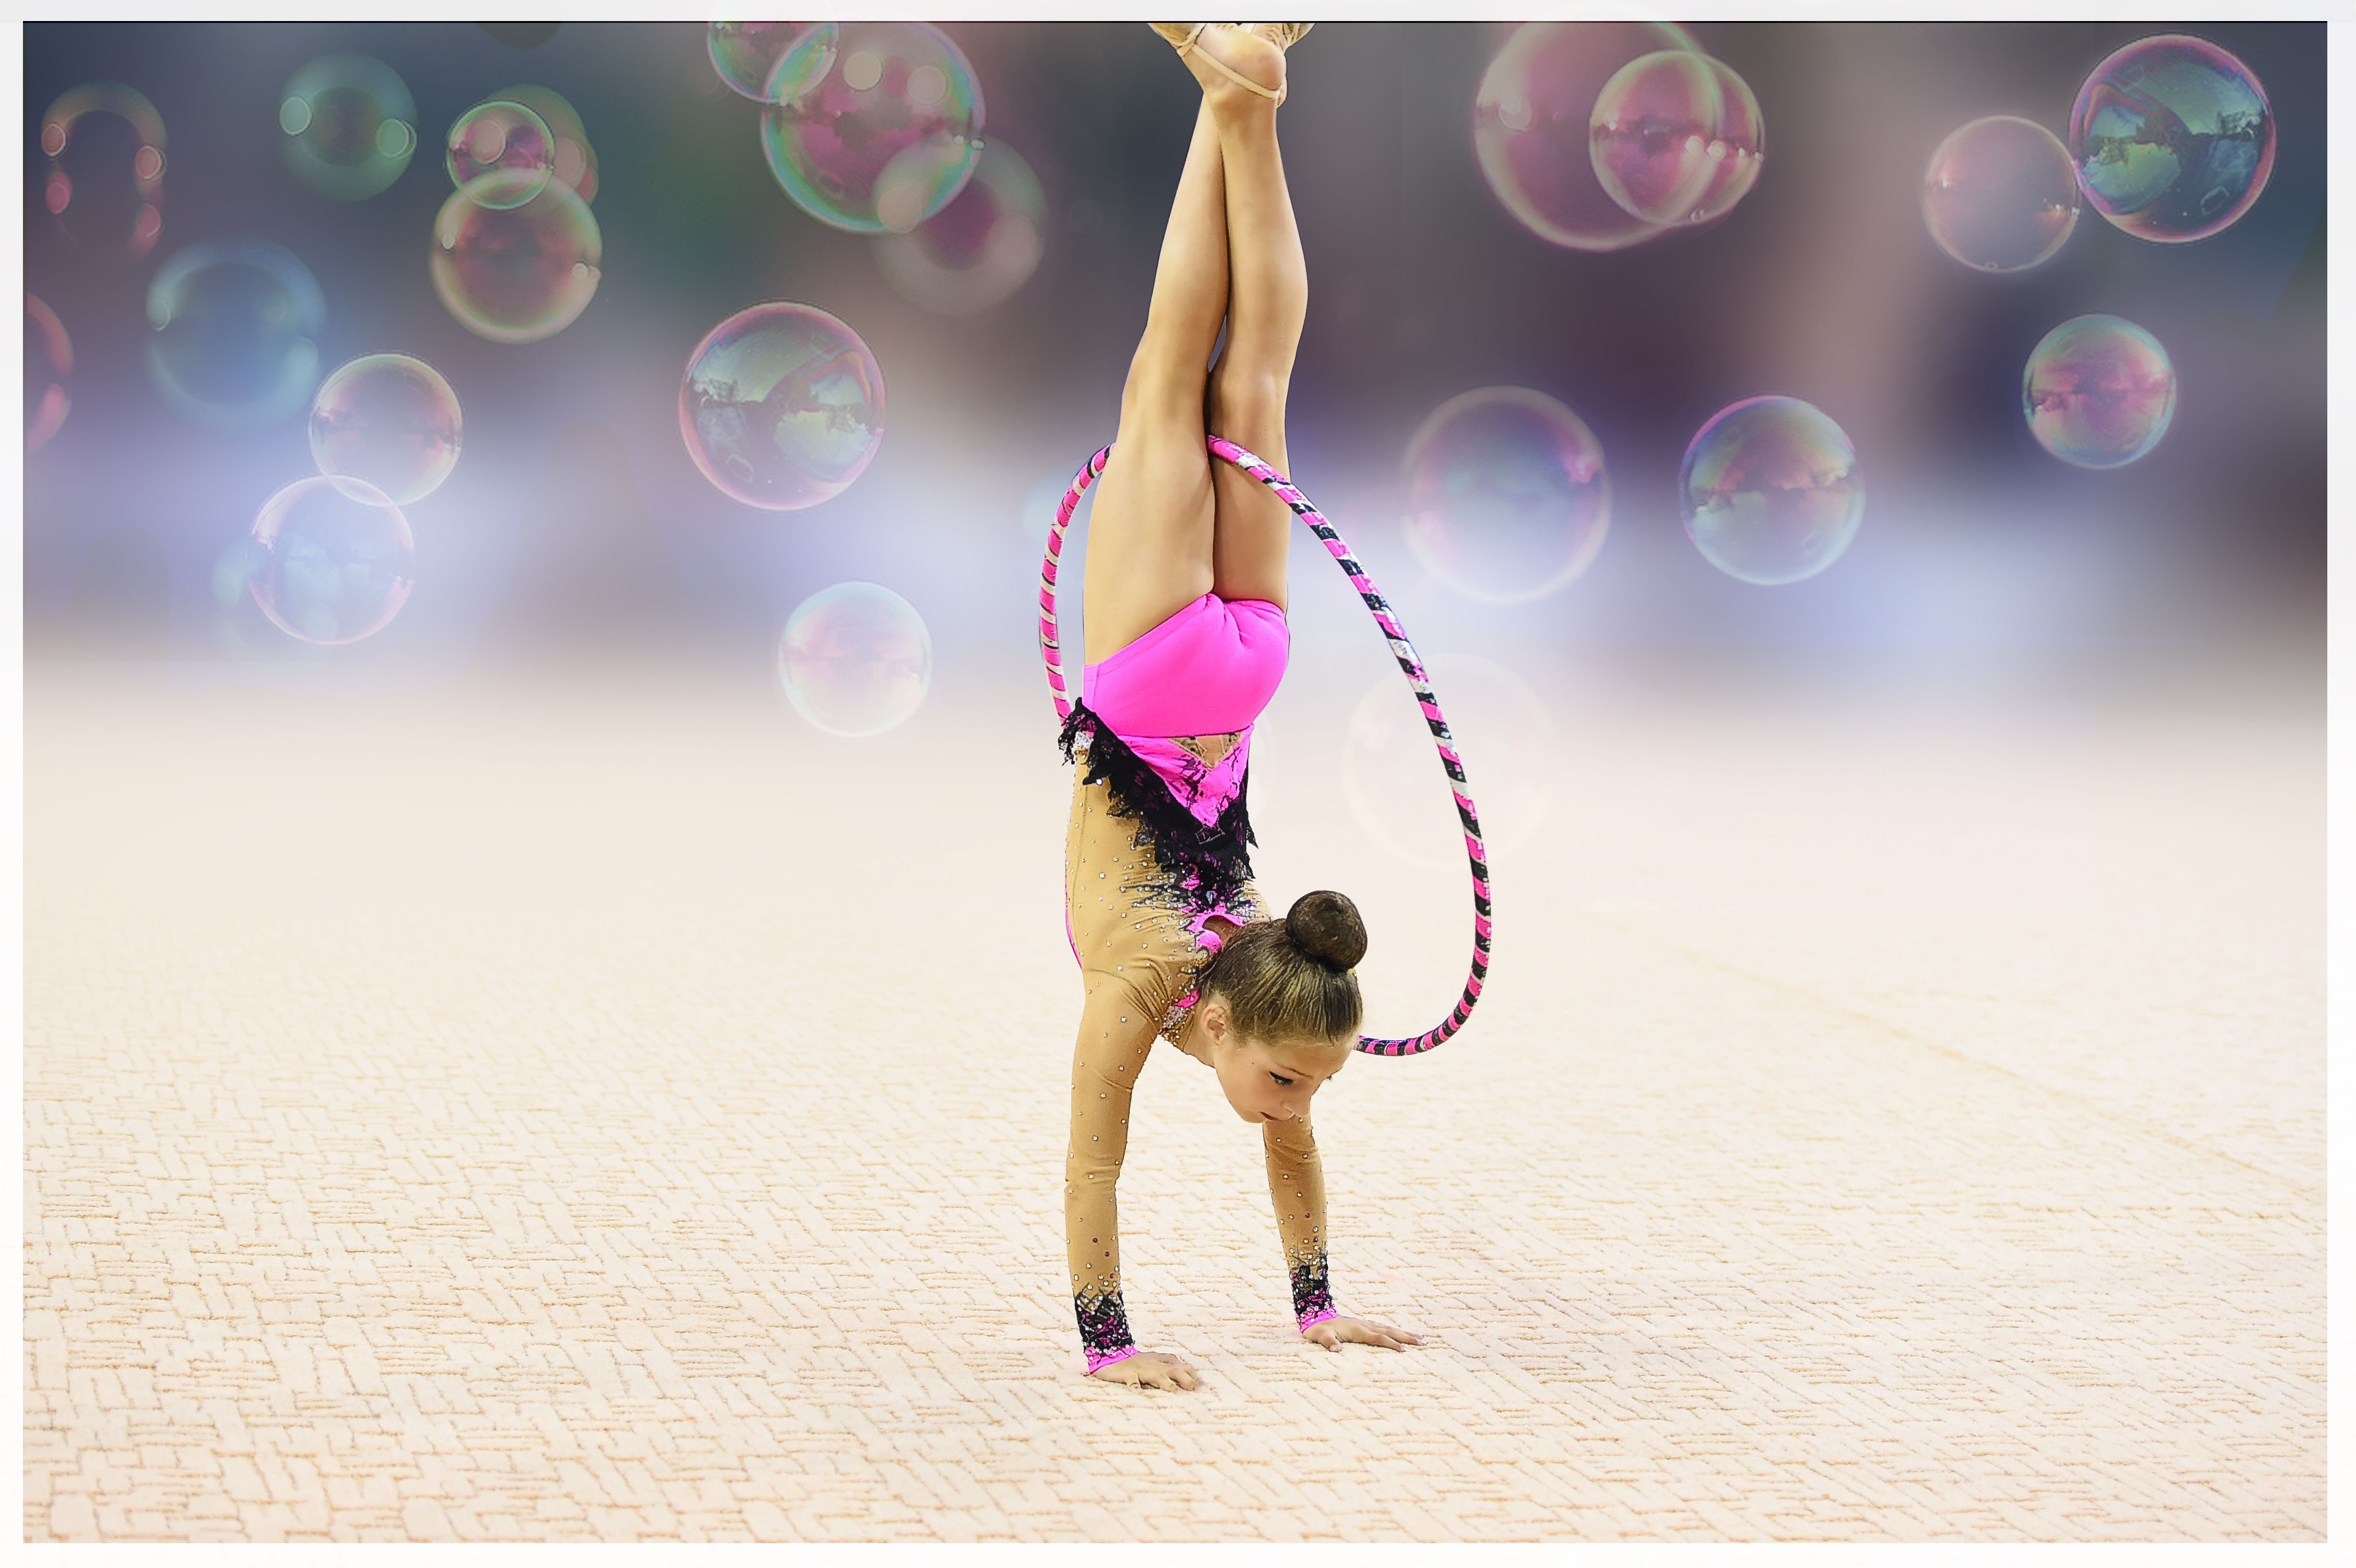 Марина говорова художественная гимнастика фото